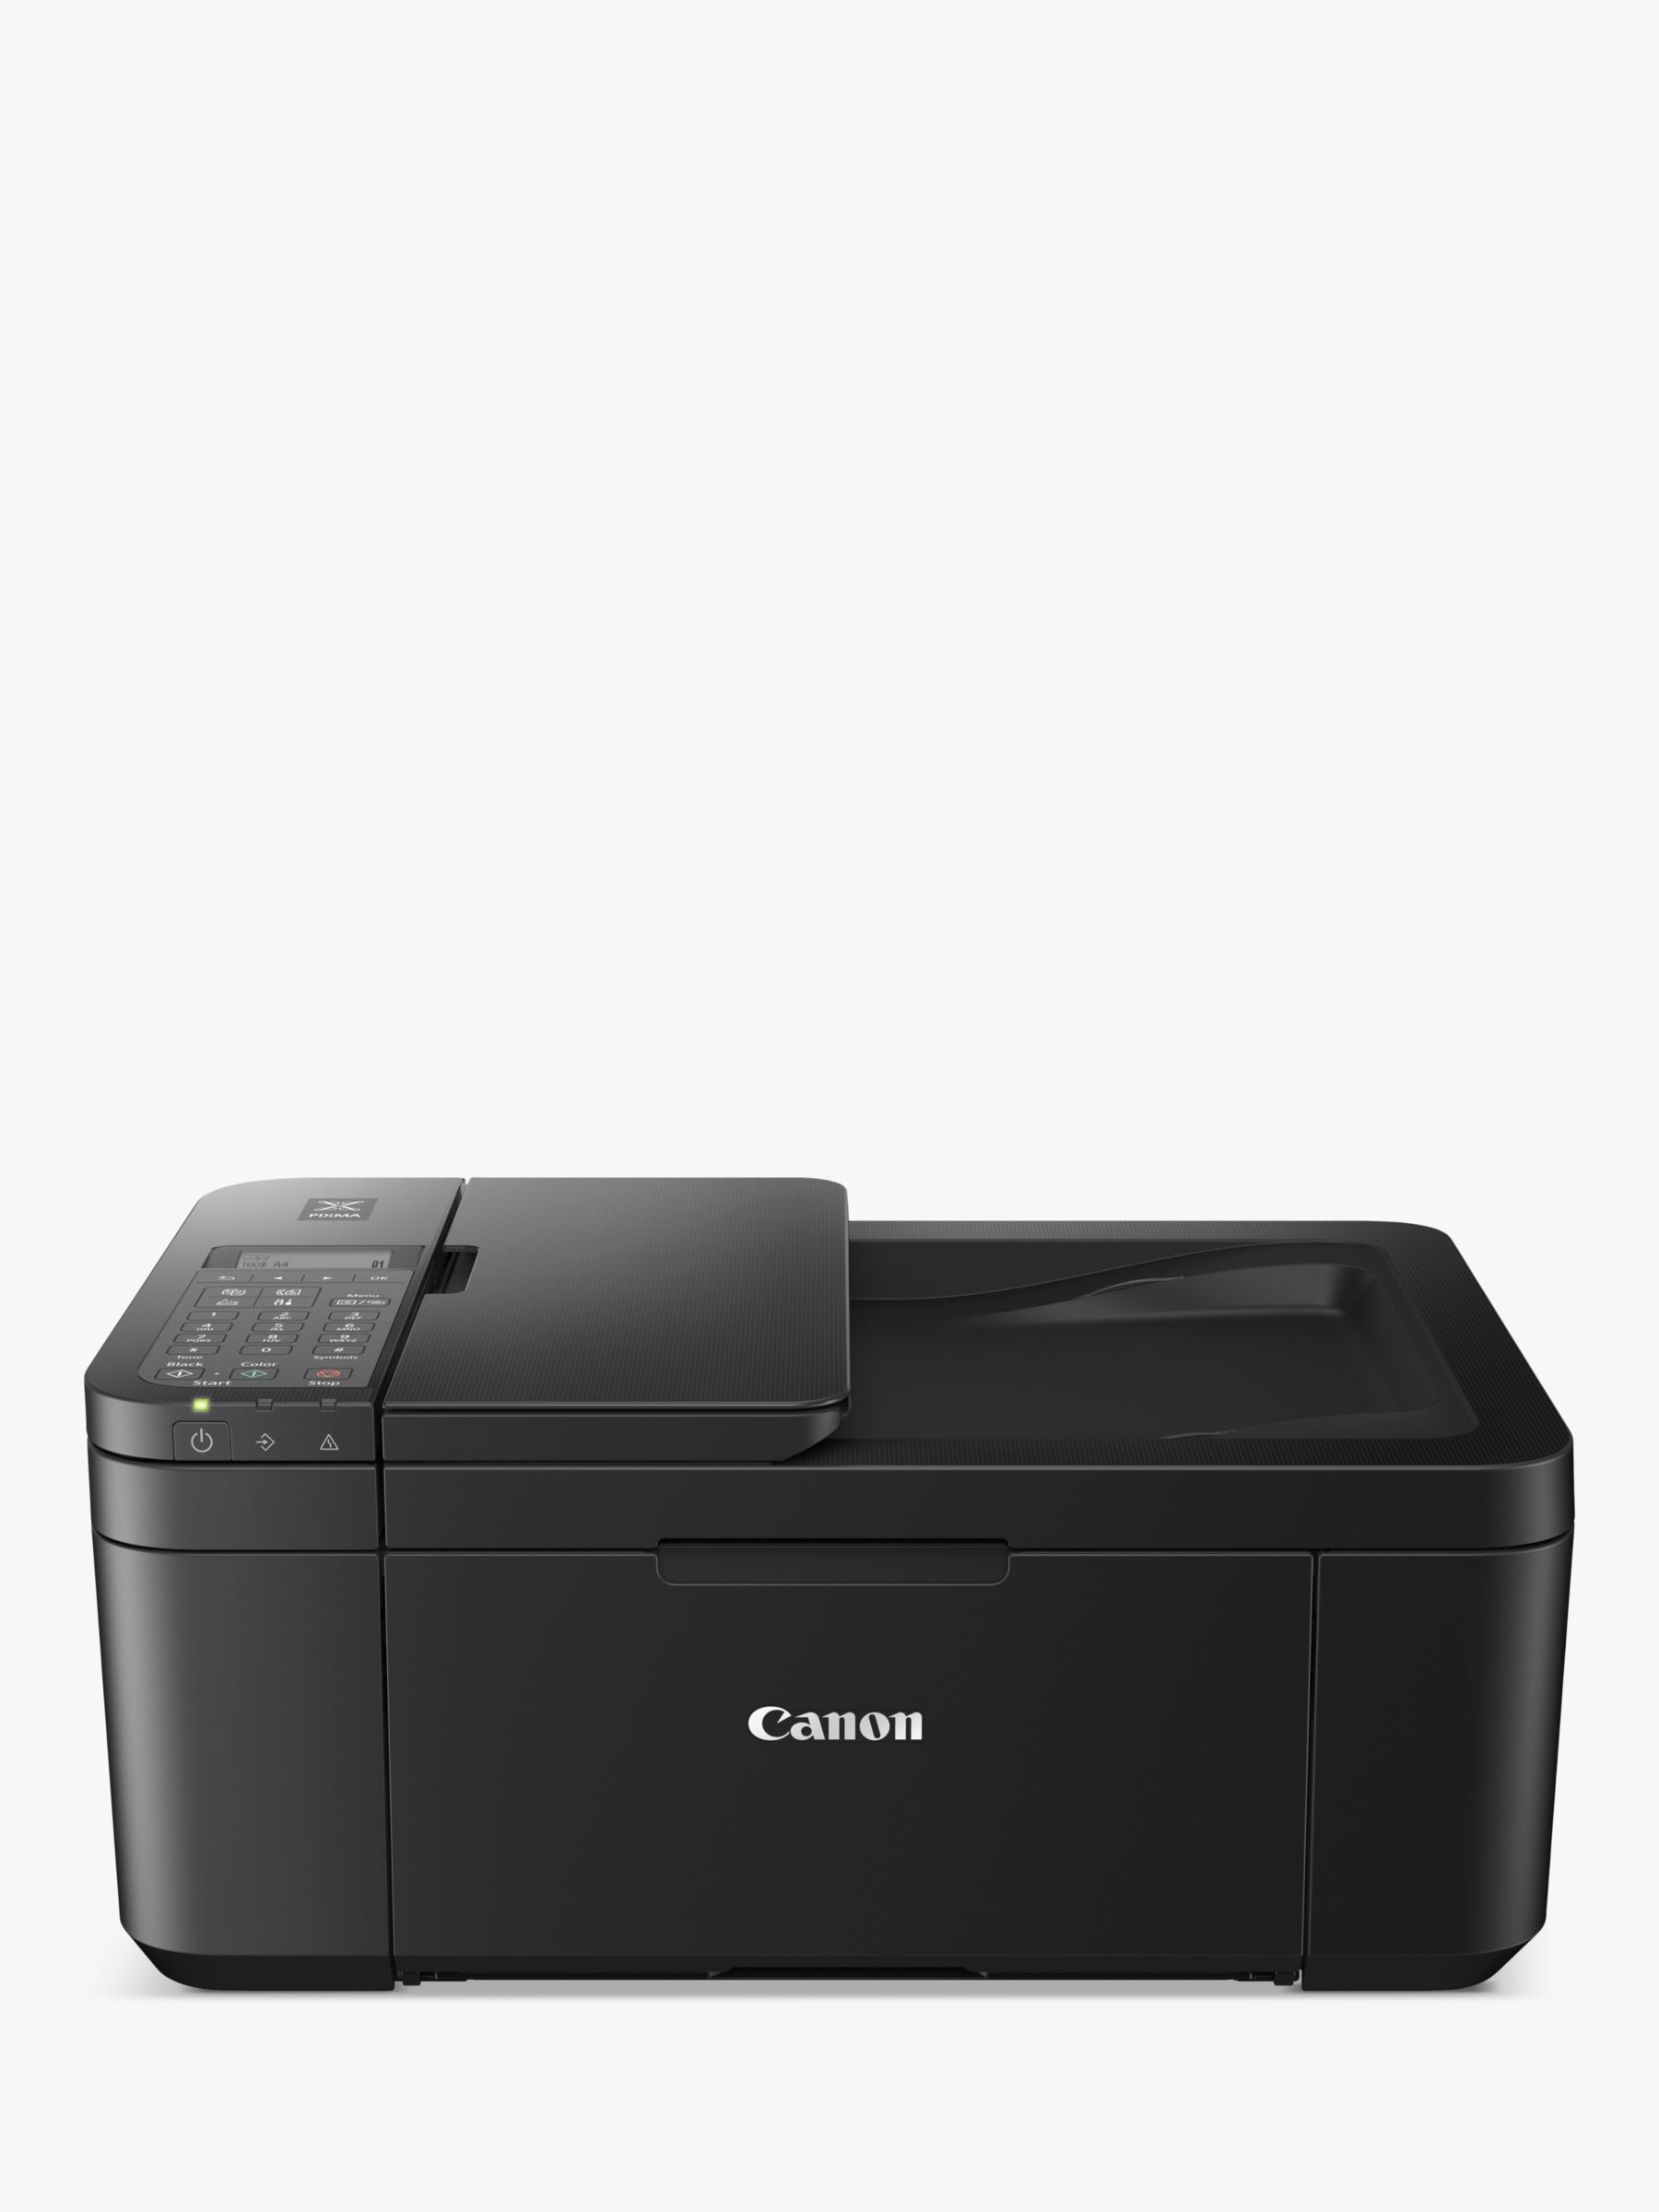 Canon PIXMA Printer, Black Wireless TR4750i Wi-Fi All-in-One